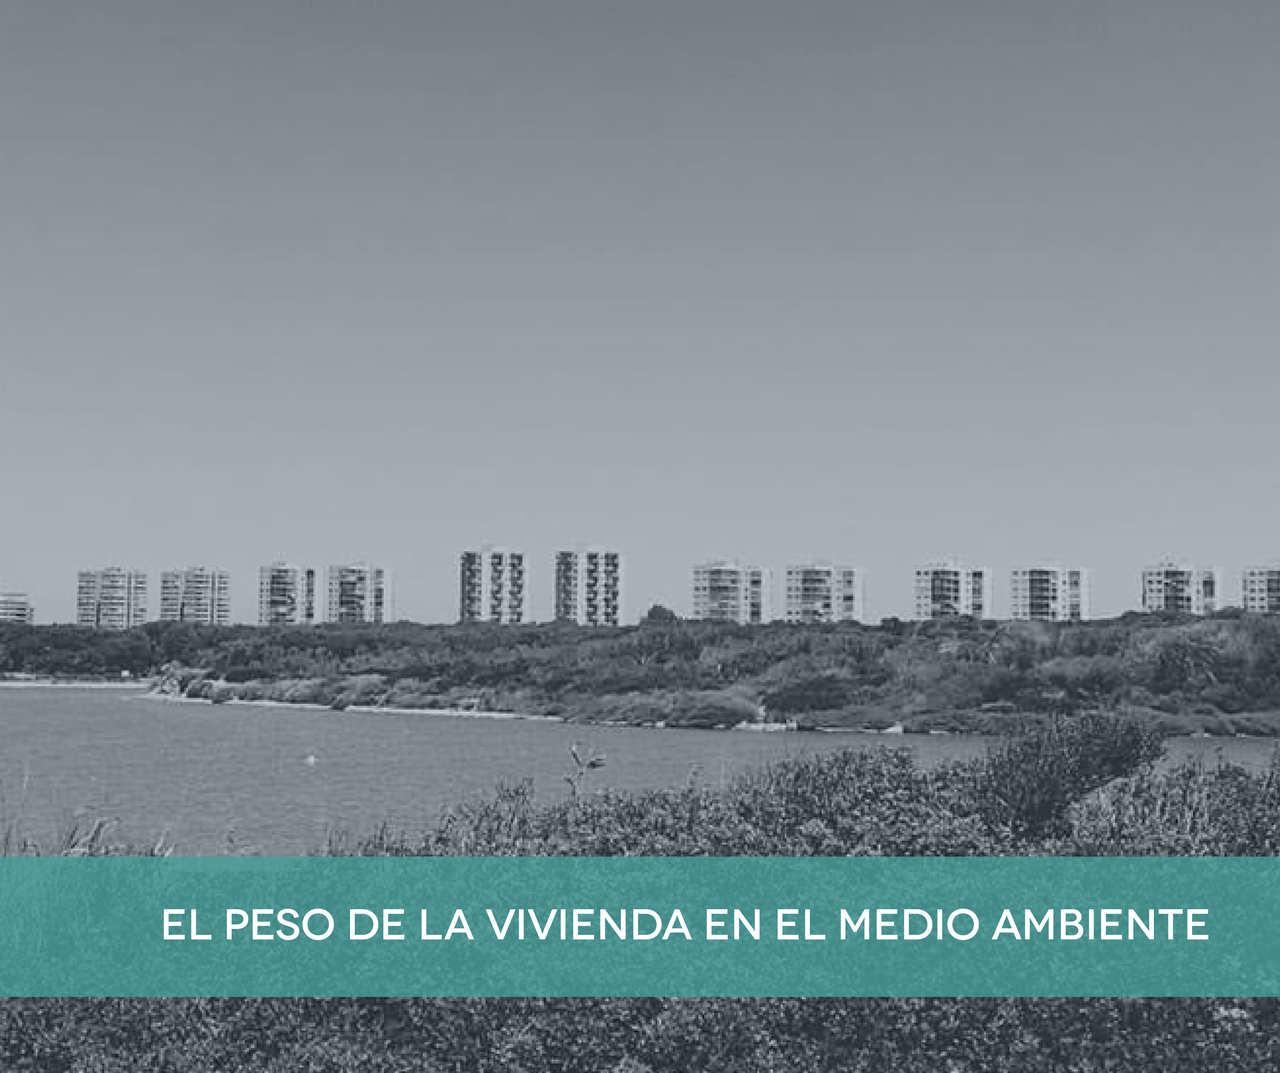 Cover Image for El peso de la vivienda en el urbanismo sostenible